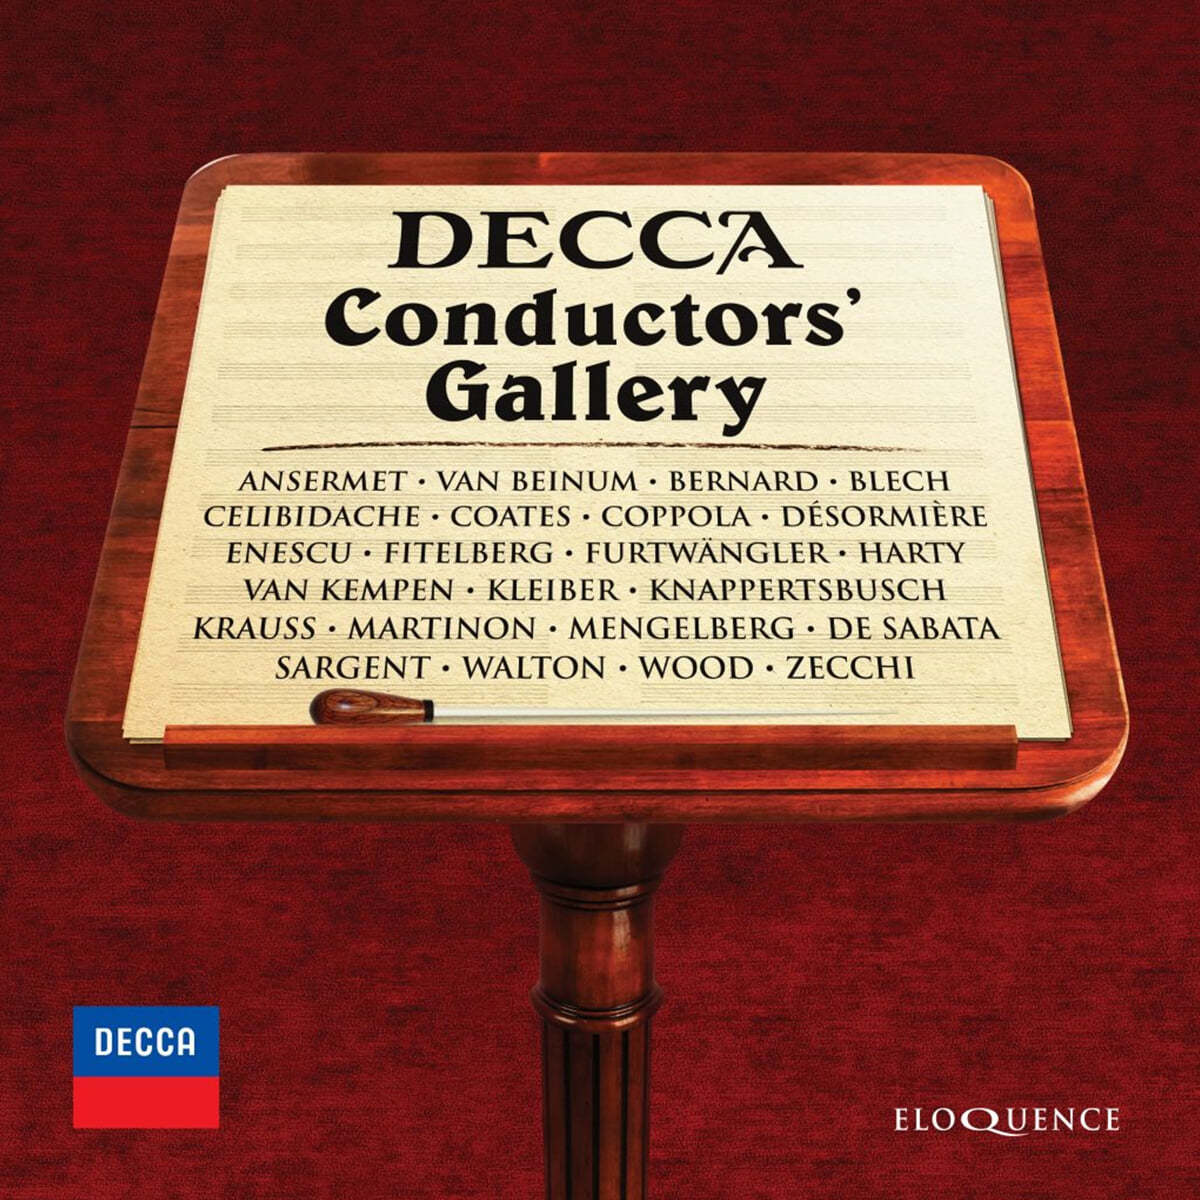 데카 지휘자 갤러리 - 23인의 지휘자들 (Decca Conductors&#39; Gallery)